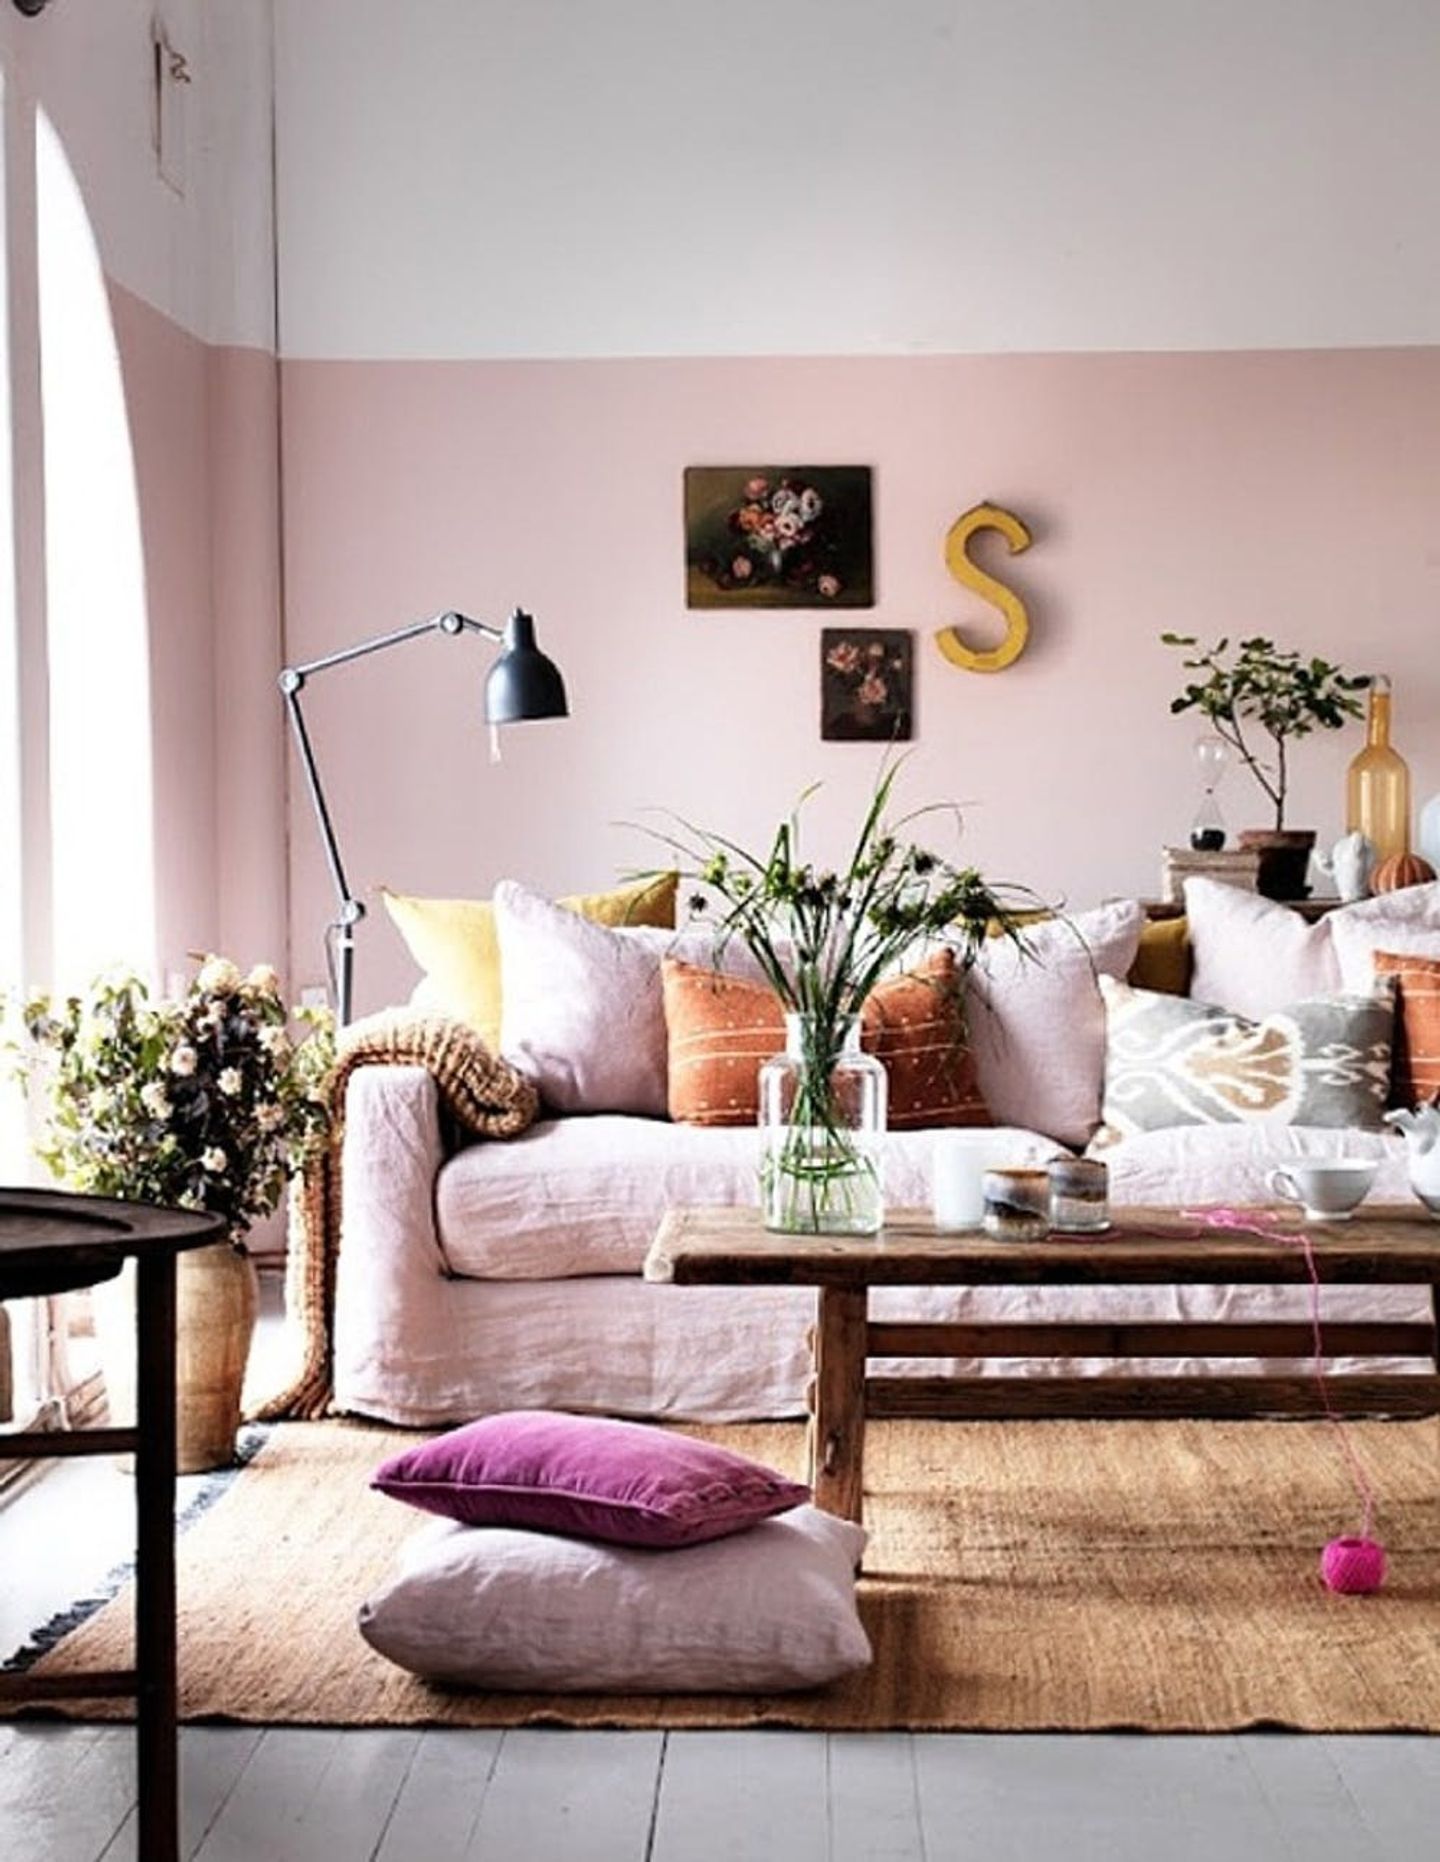 Sala com paredes pintadas meio a meio de branco e rosa clarinho.